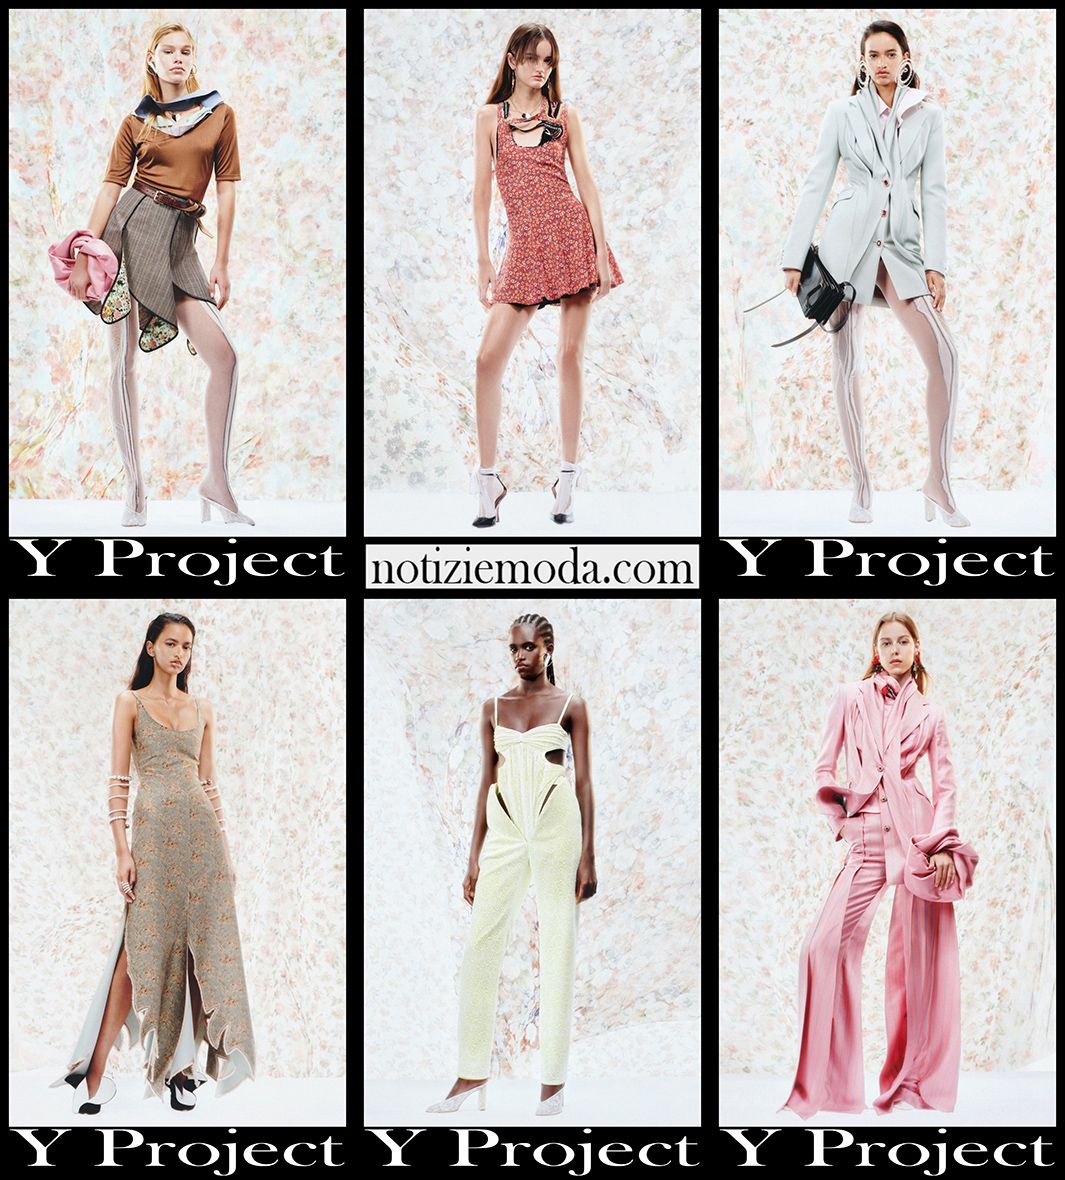 Nuovi arrivi Y Project 2021 collezione abbigliamento donna